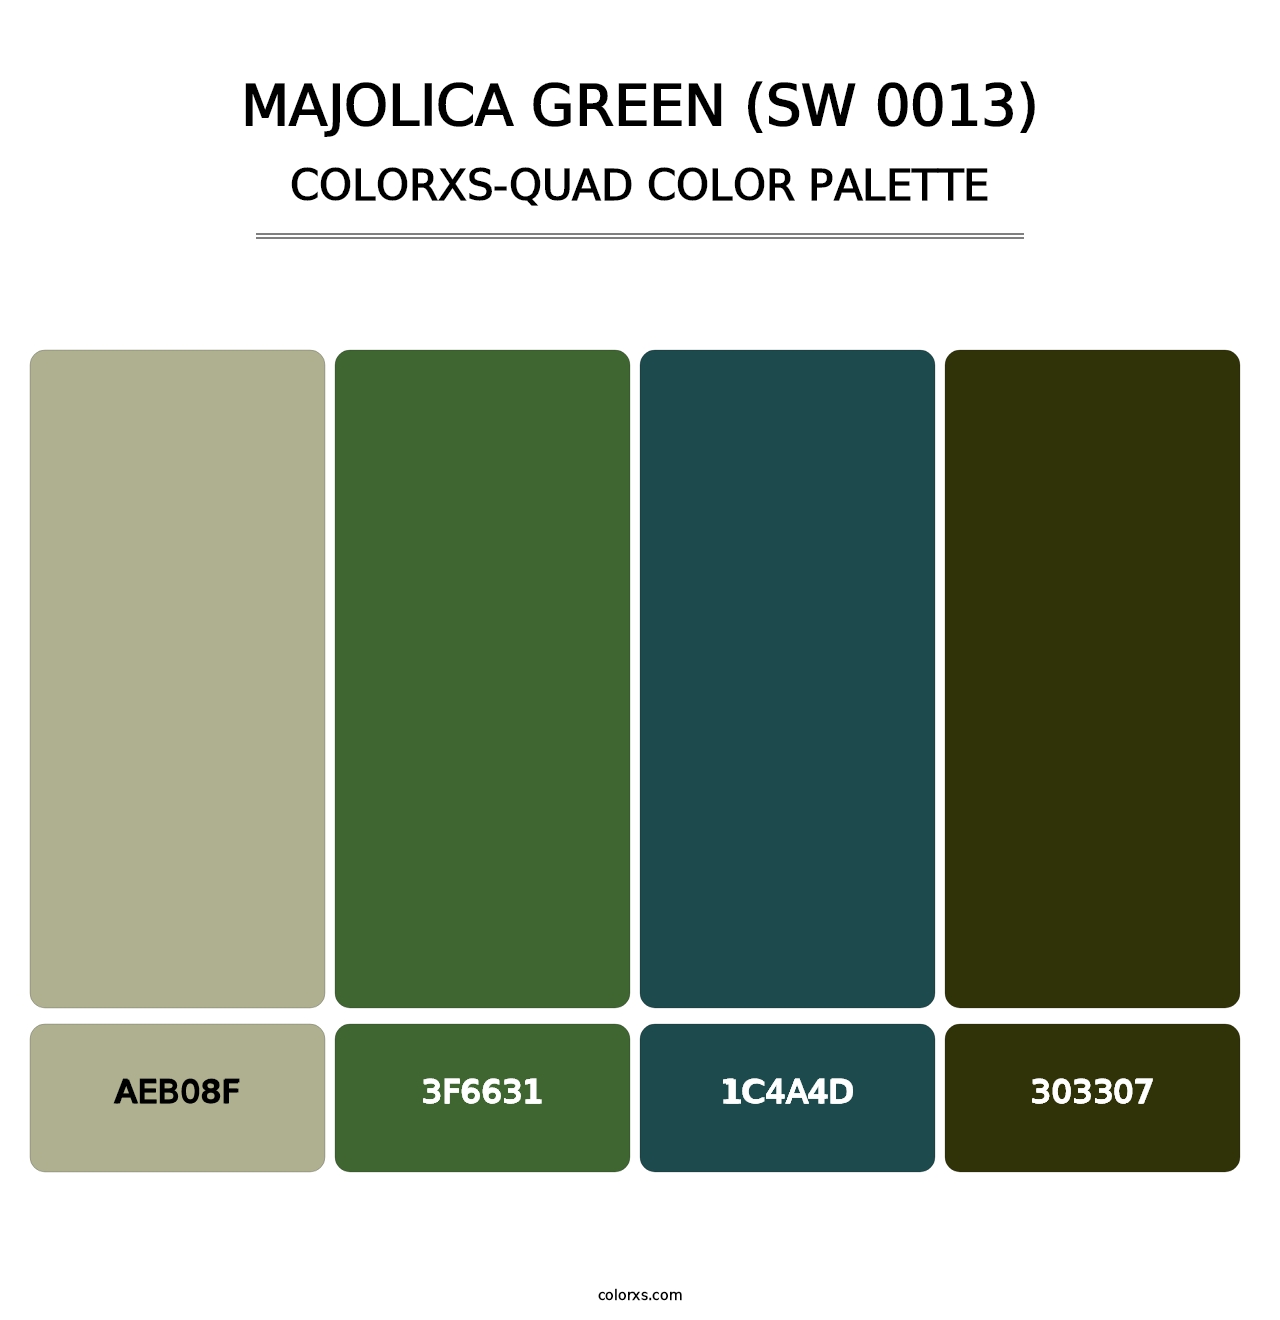 Majolica Green (SW 0013) - Colorxs Quad Palette